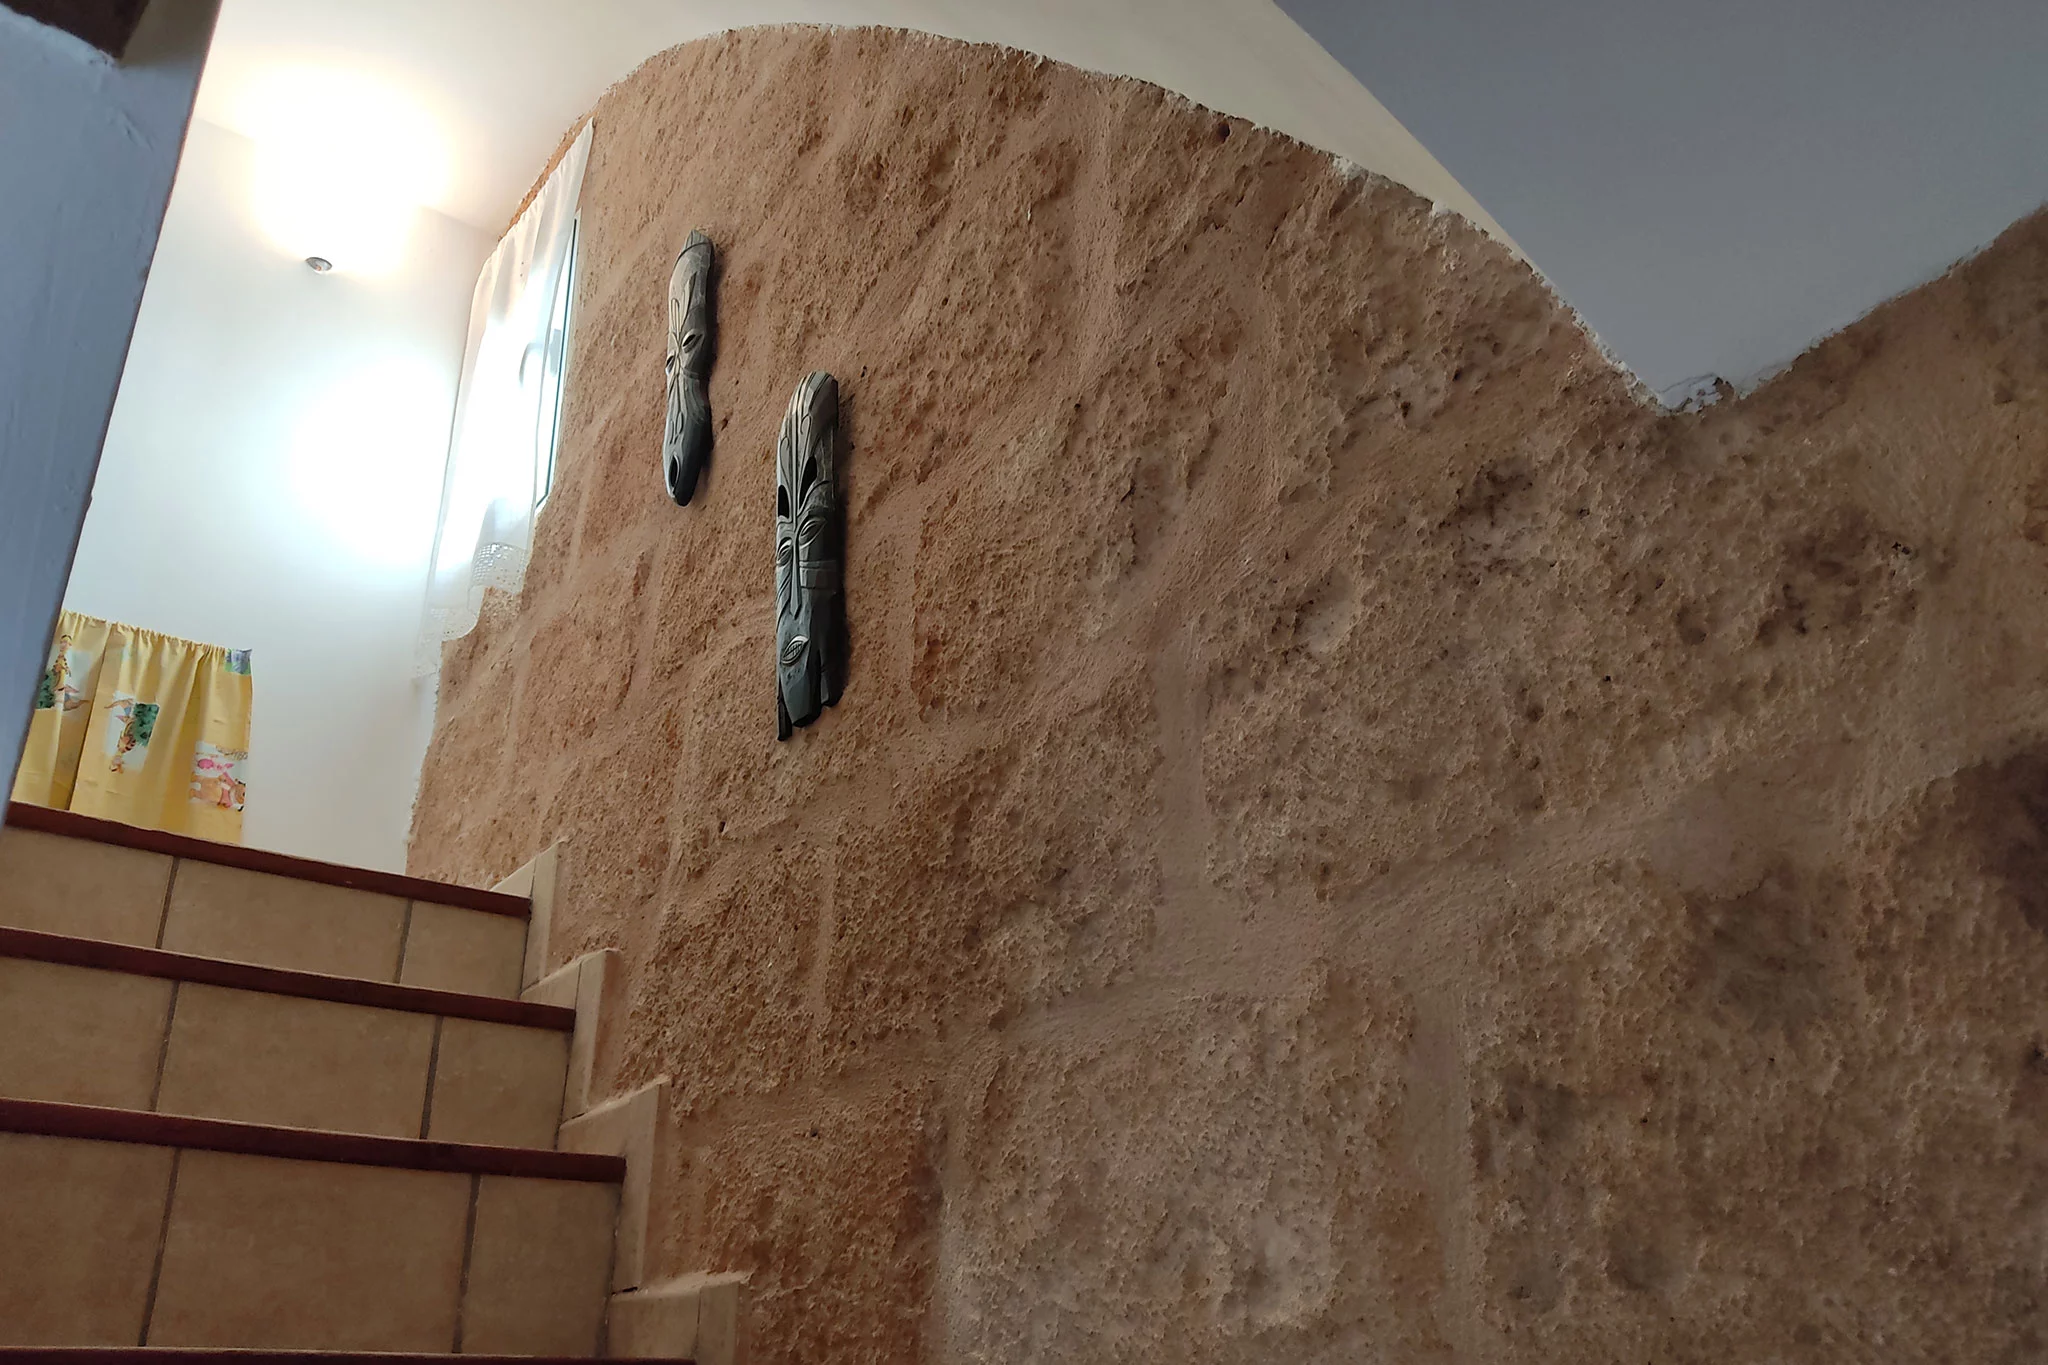 Paredes originales de piedra tosca en una propiedad en venta en Jávea – Xabiga Inmobiliaria